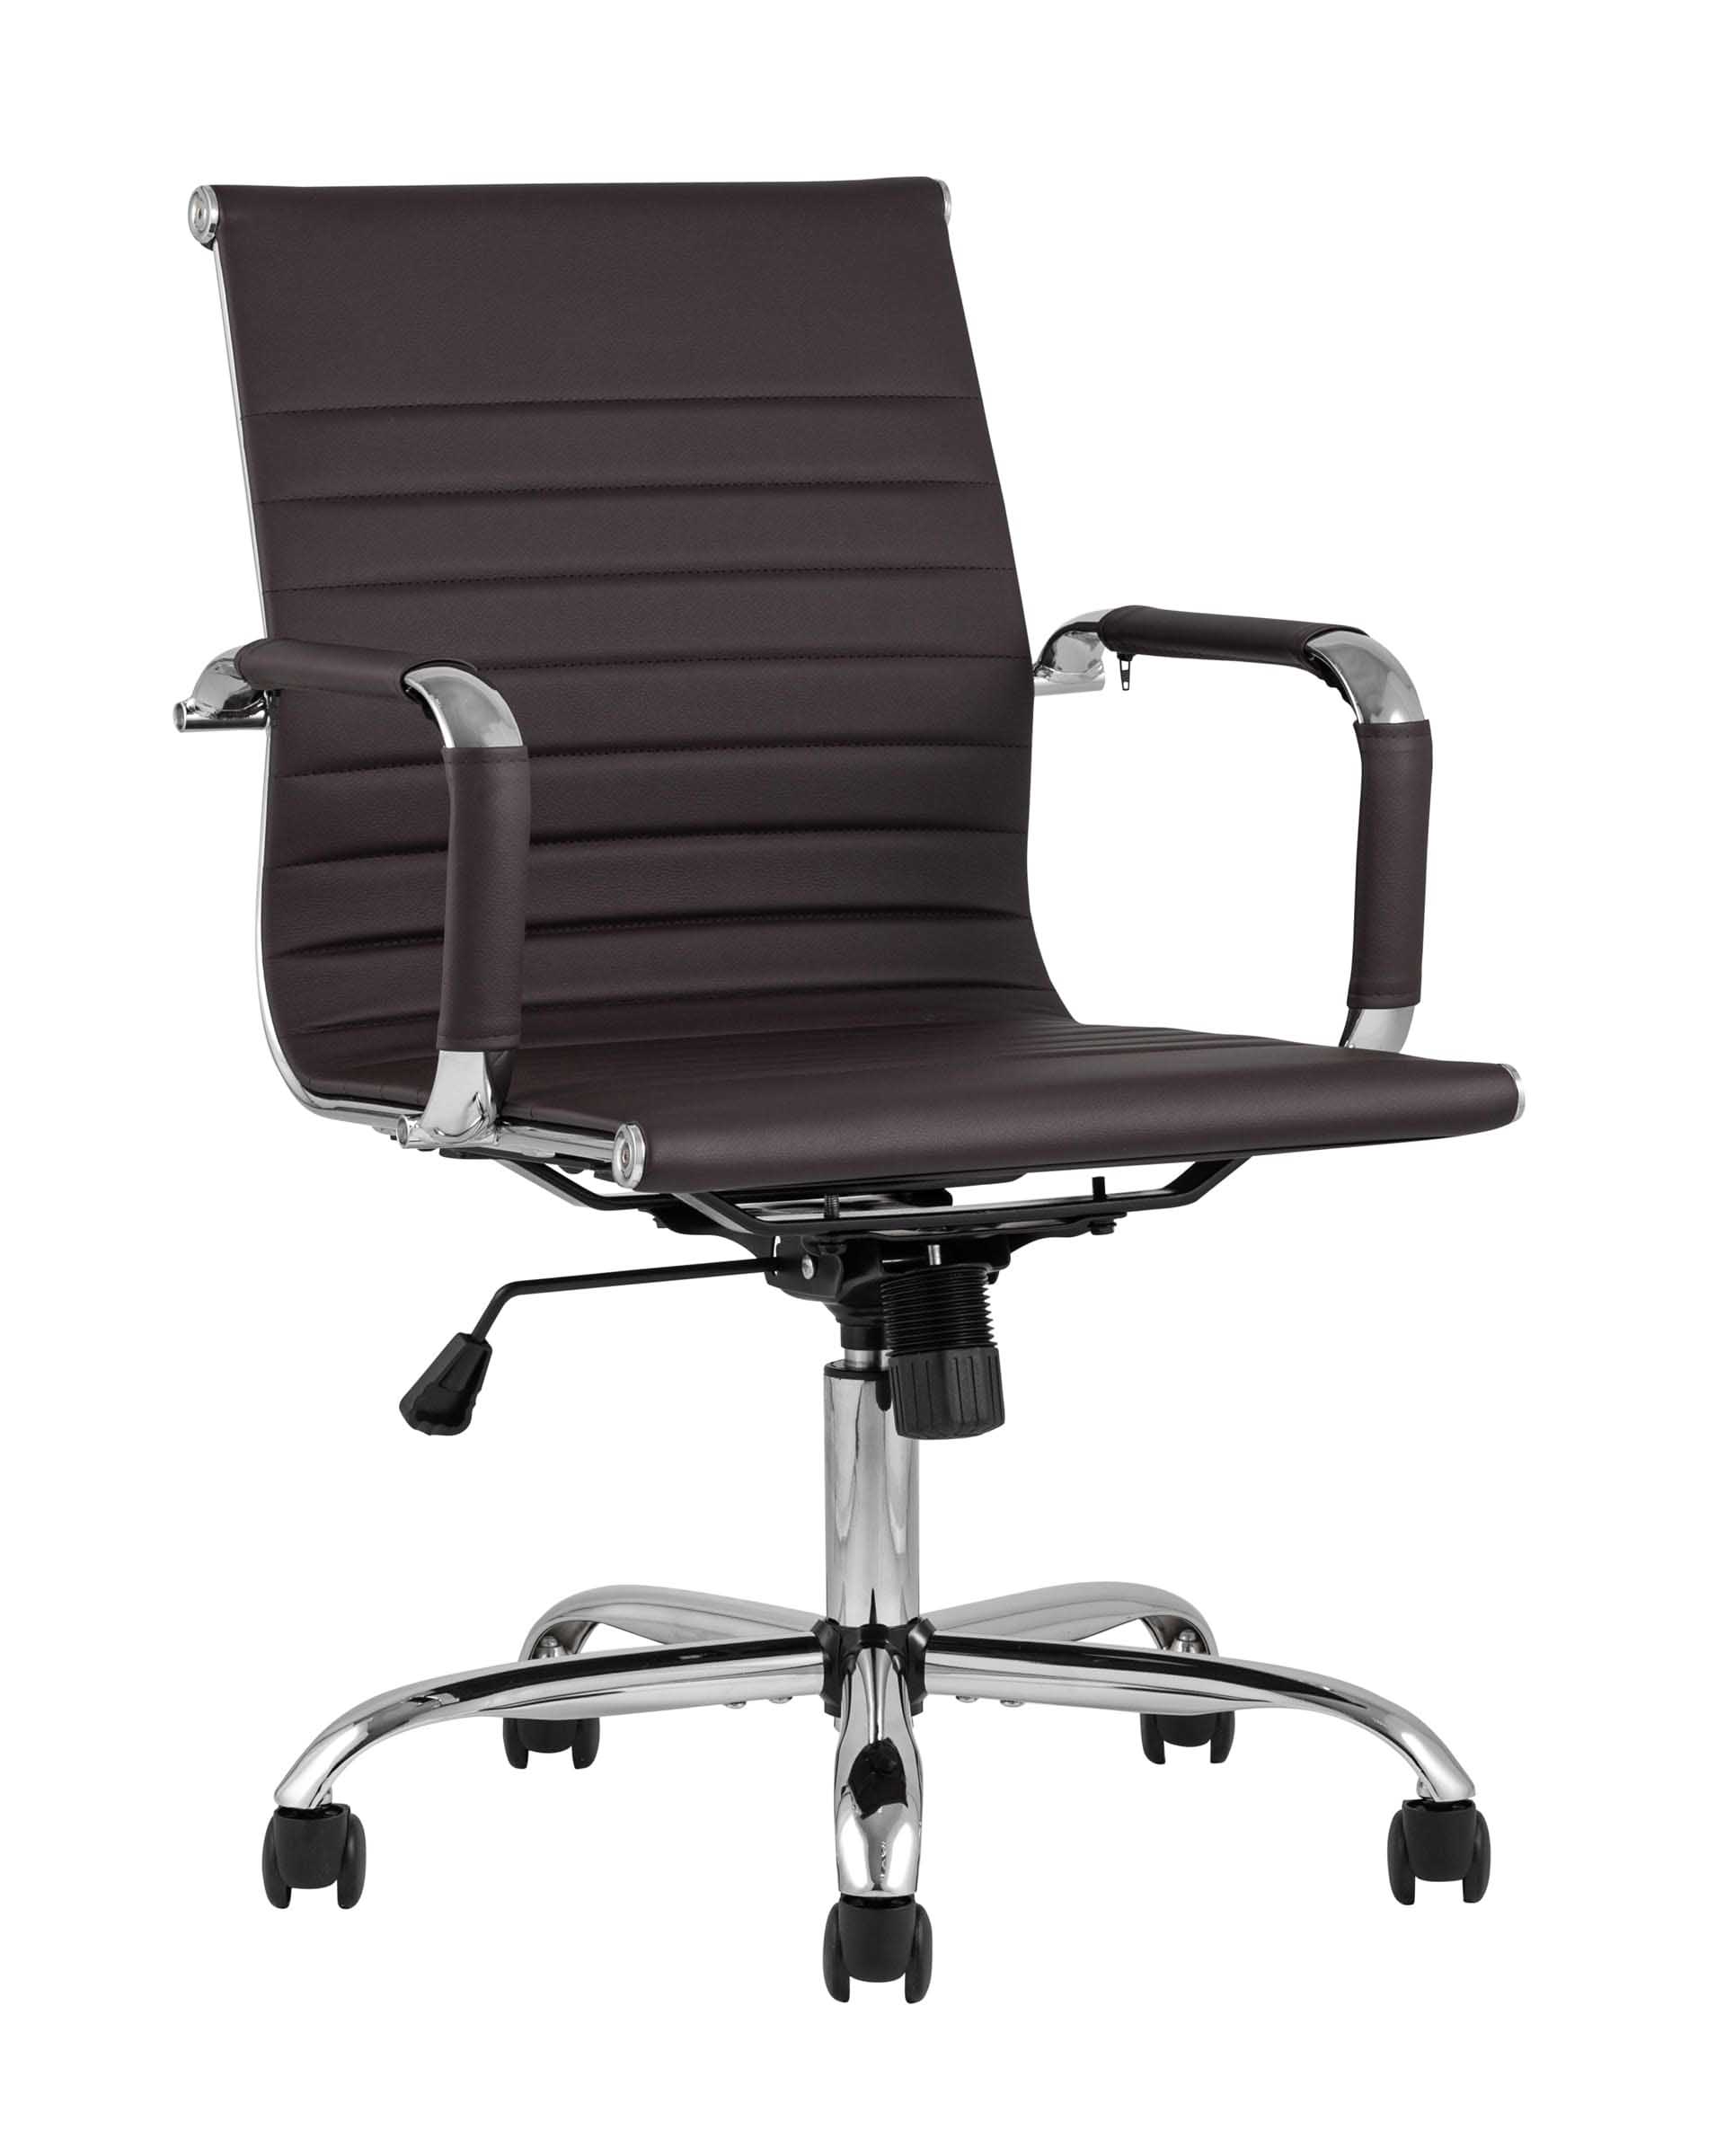 Компьютерное кресло TopChairs City S офисное коричневое, обивка экокожа, механизм качания и регулировки по высоте